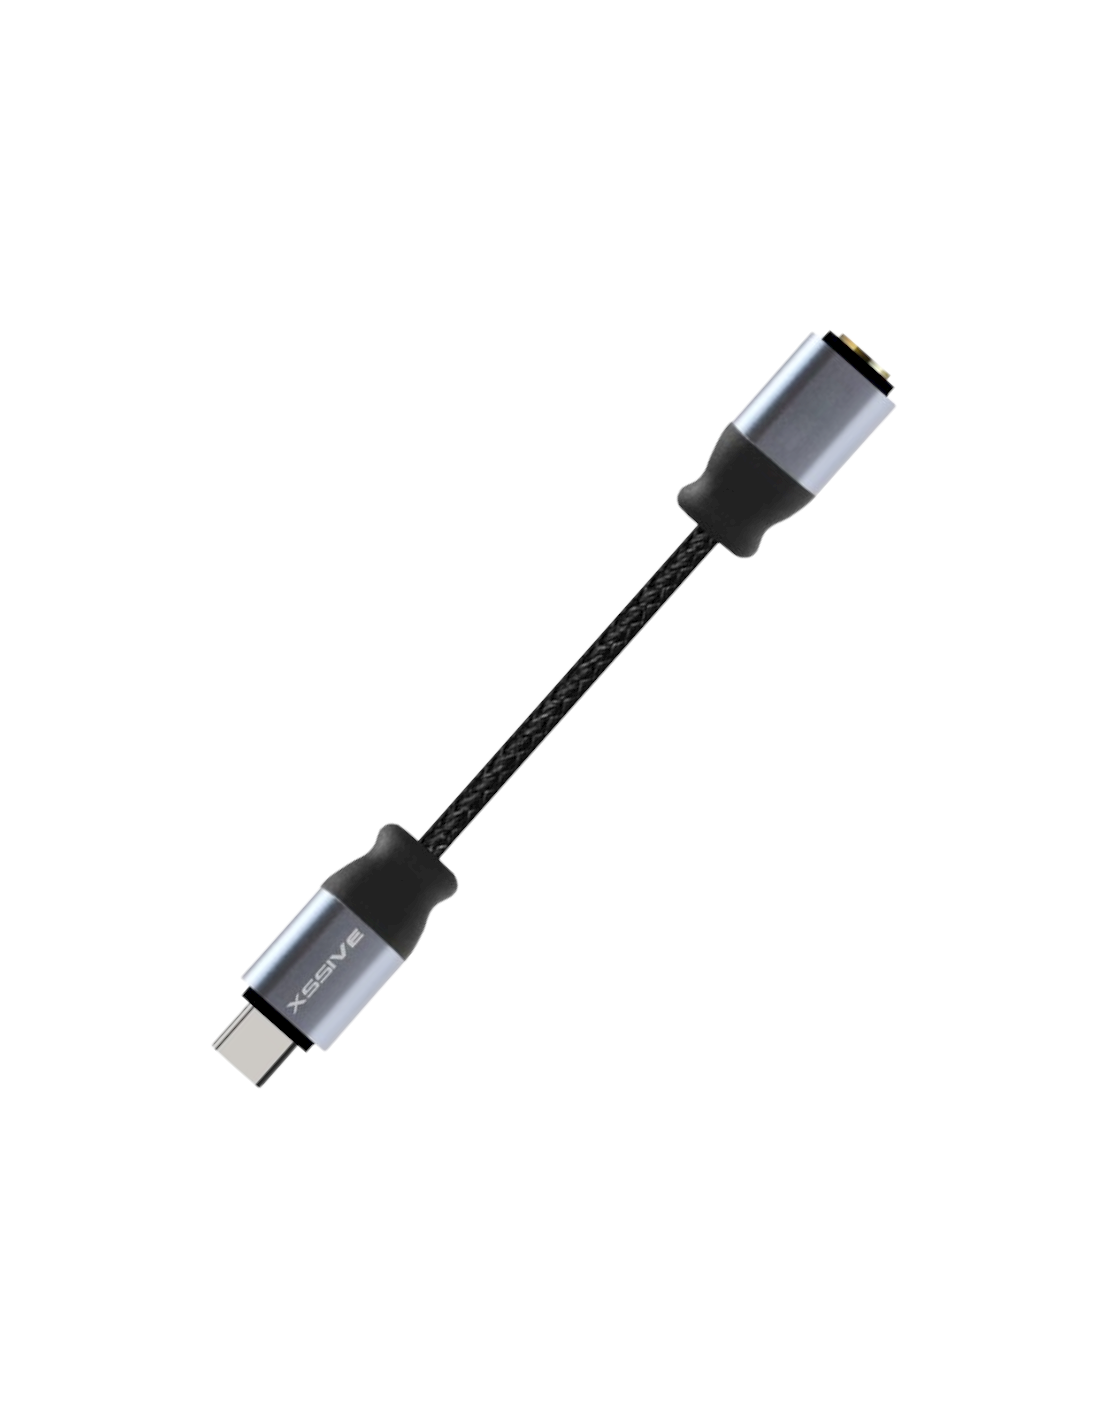 CÂBLE ADAPTATEUR USB-C TYPE C VERS JACK 3,5mm Noir AUDIO ÉCOUTEURS